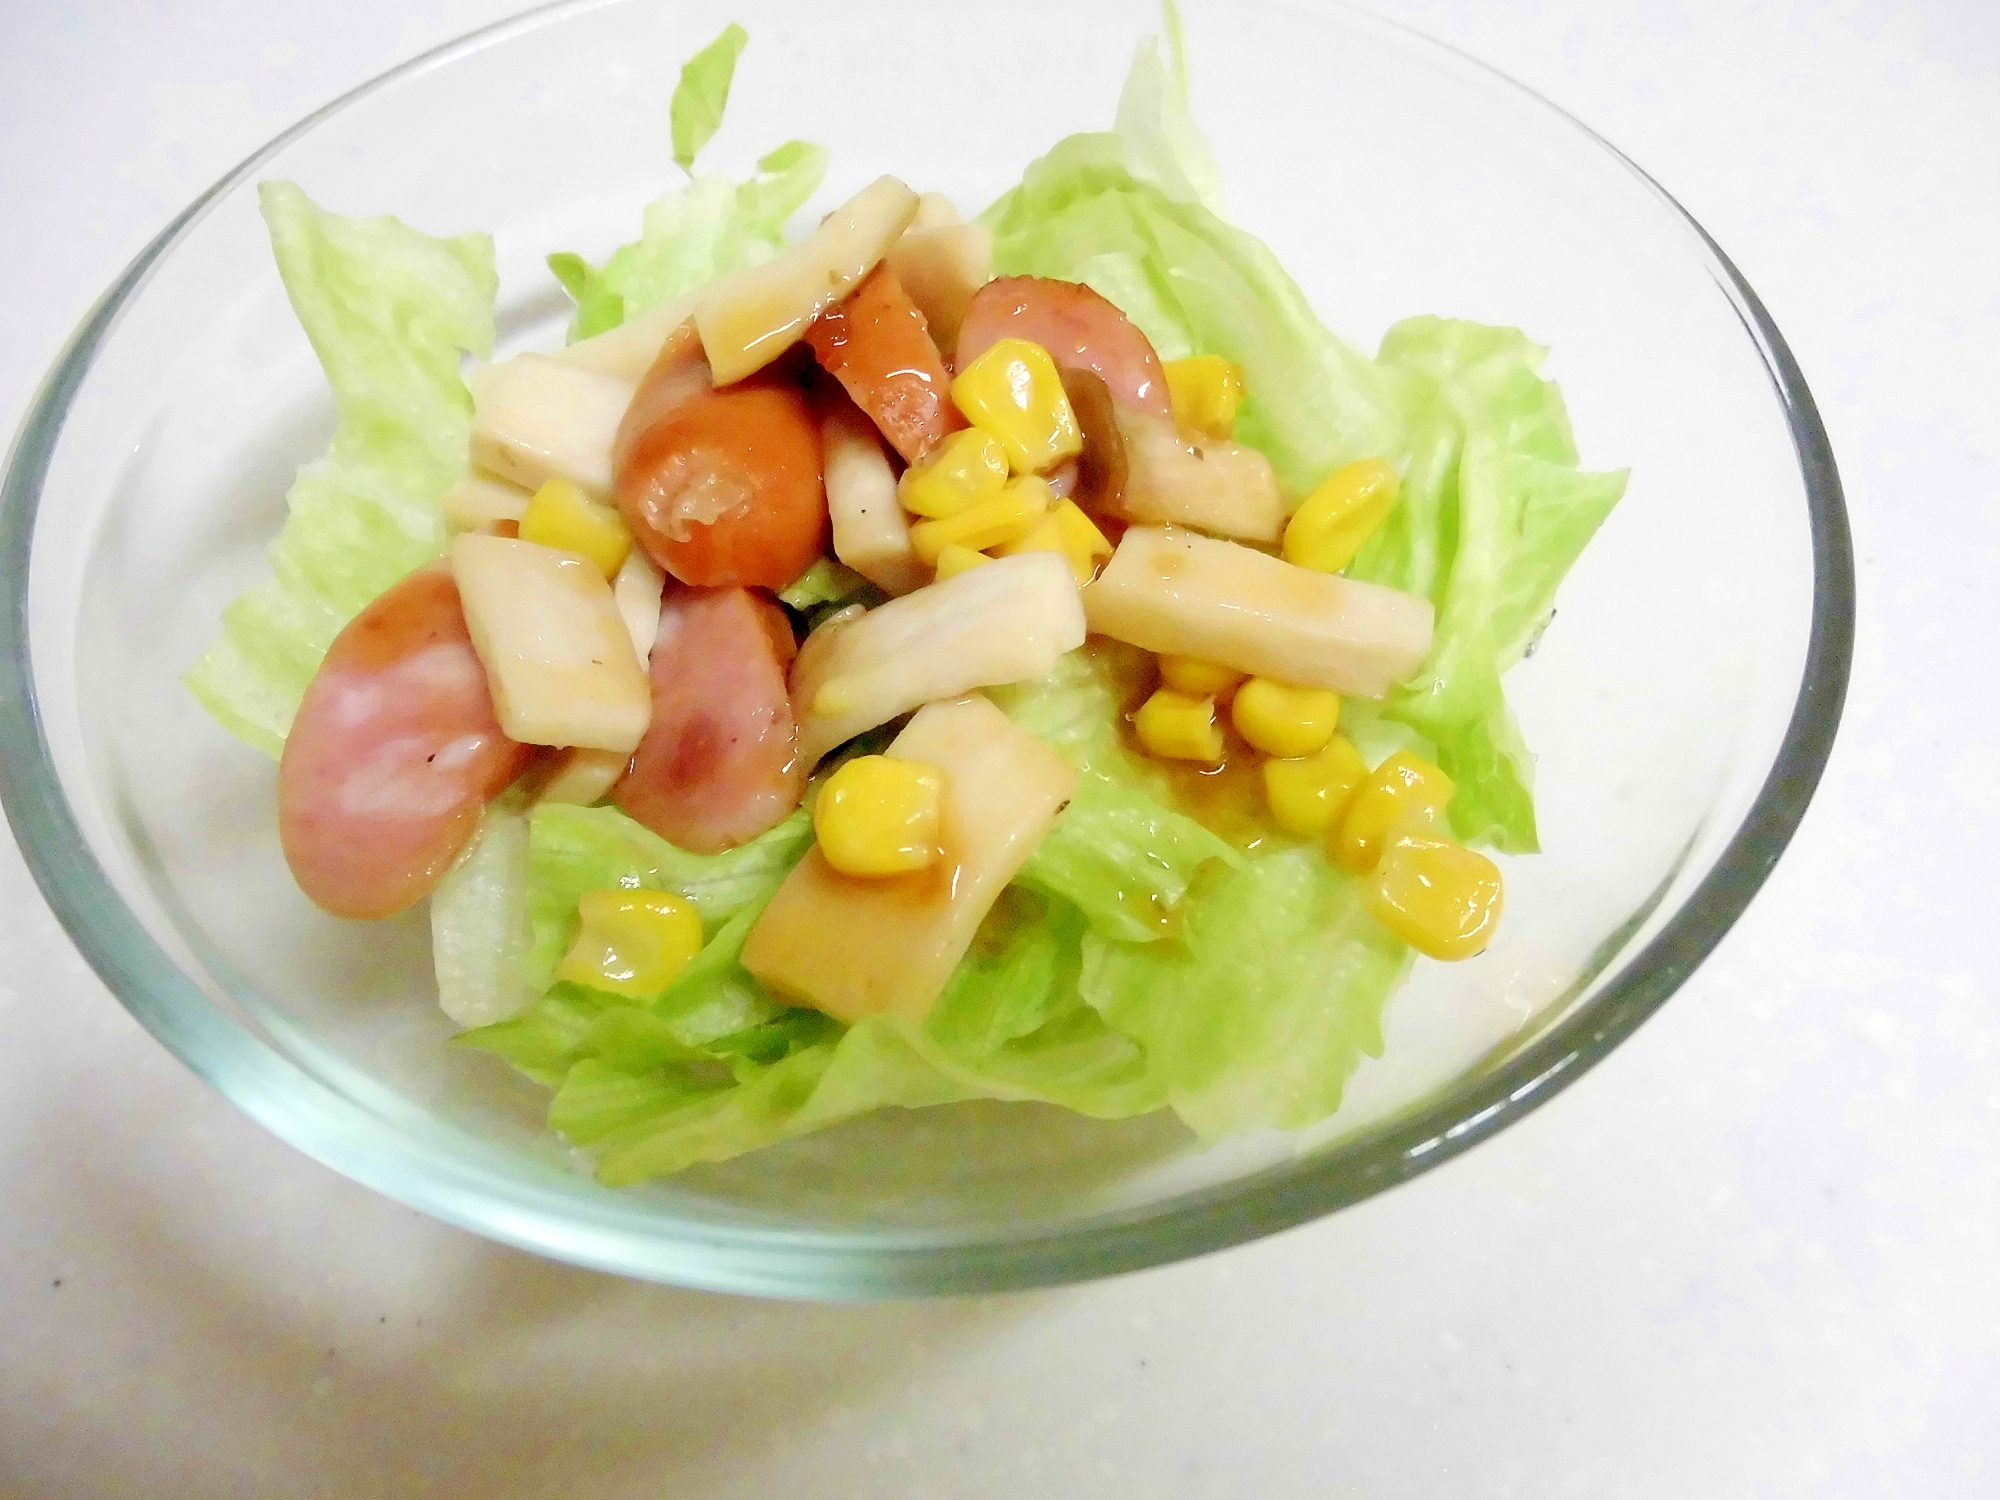 ［お手伝いレシピ］エリンギとウインナーの簡単サラダ